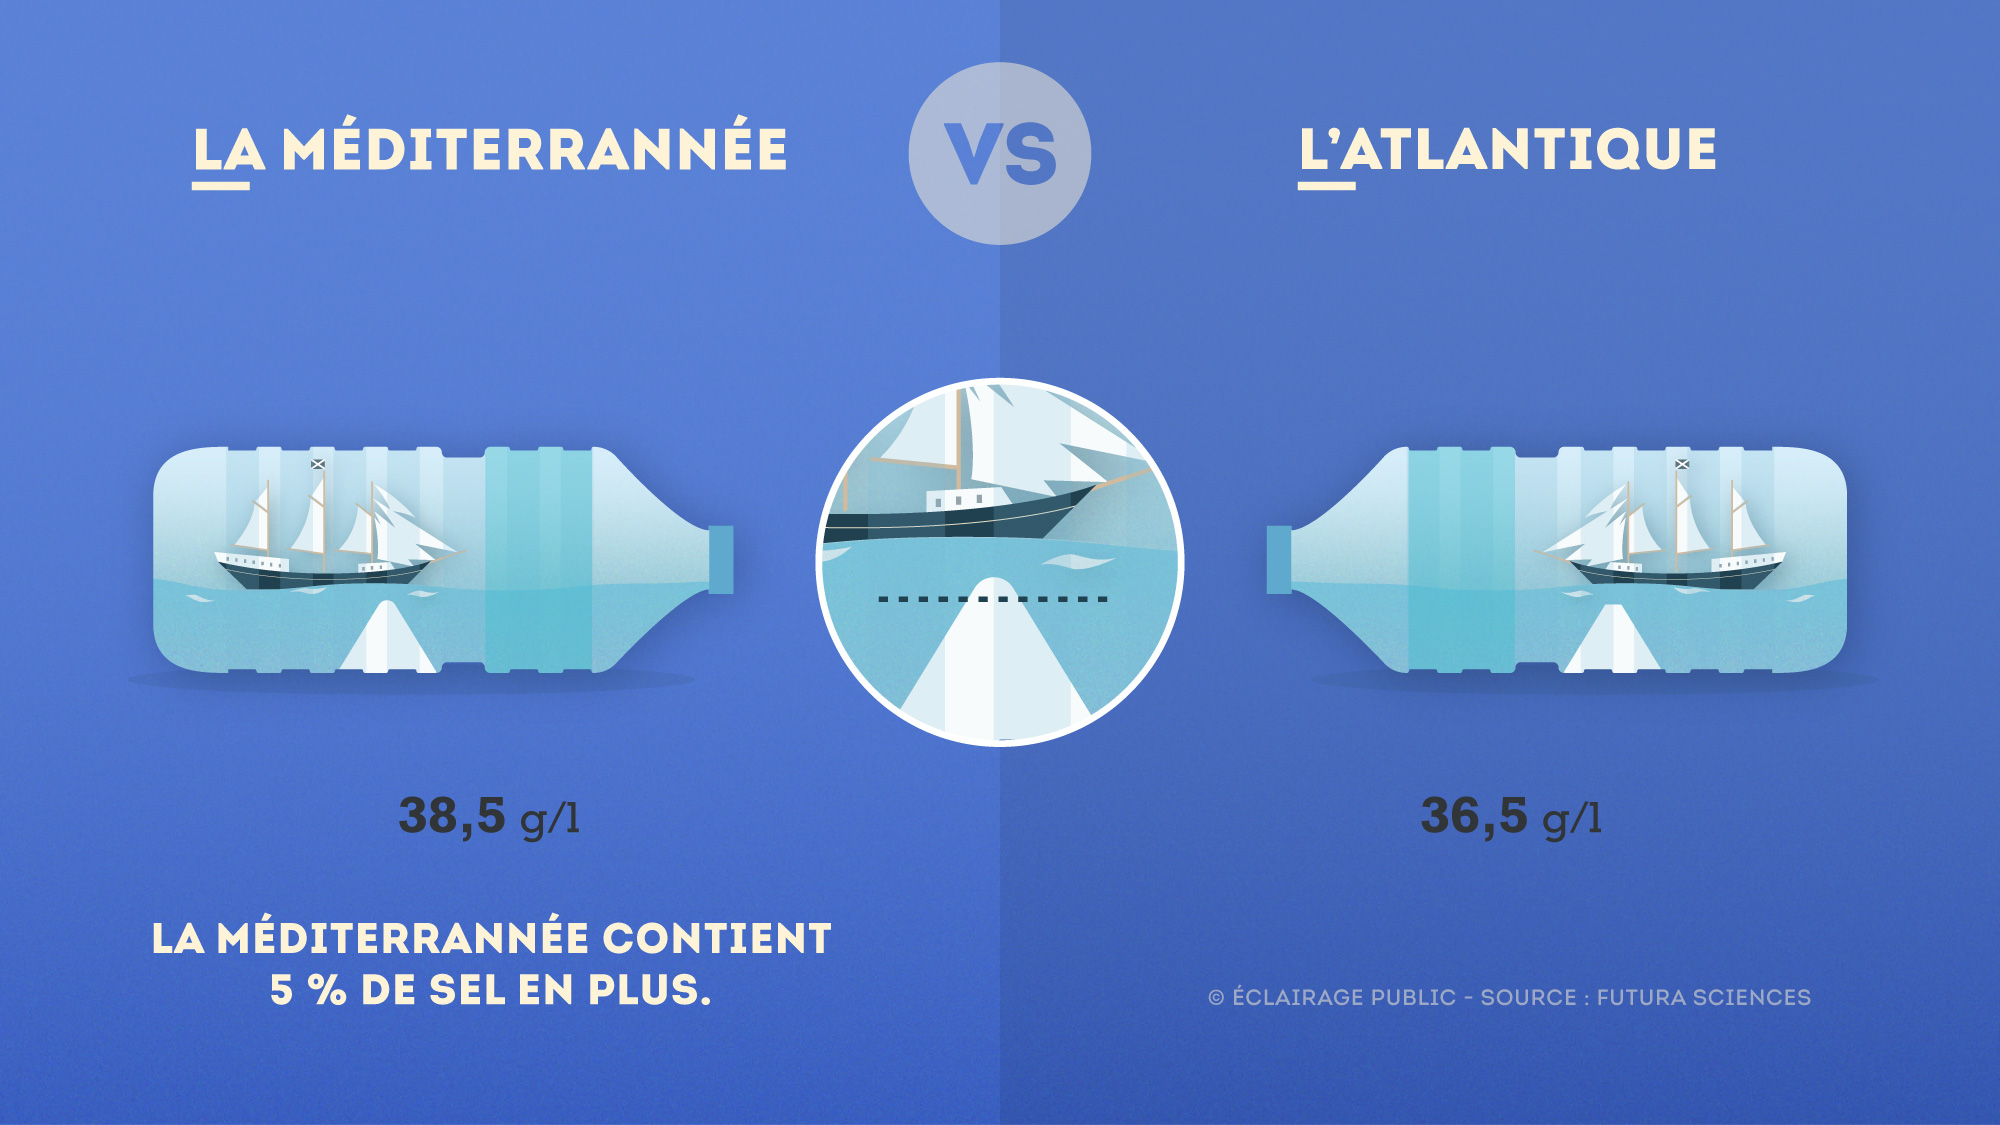 Mediterrannee-VS-Atlantique-Sel-Infographie-ECLAIRAGE-PUBLIC-2000